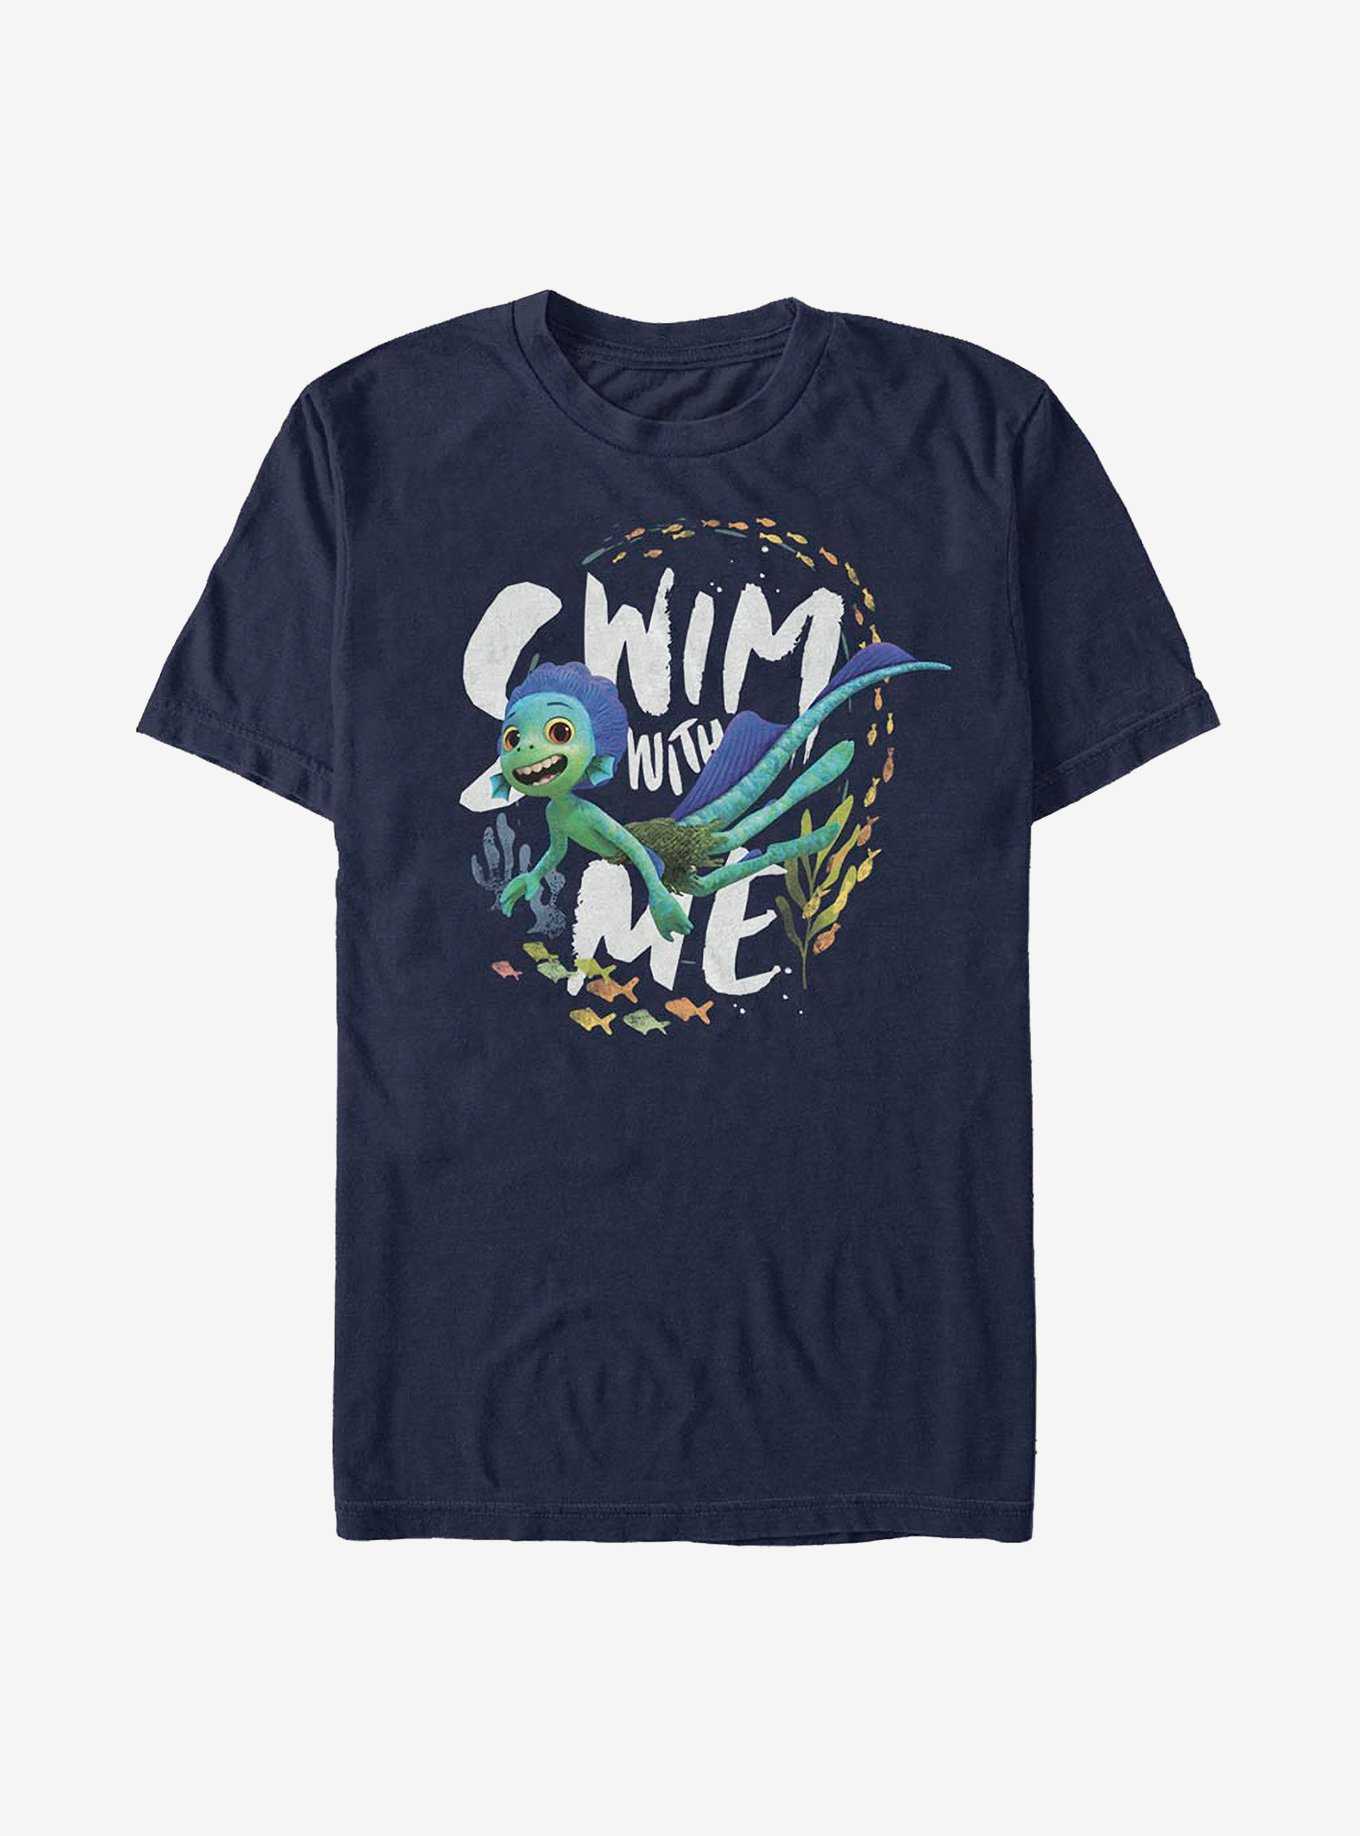 Disney Pixar Luca Swim With Me Sea Monster T-Shirt, , hi-res